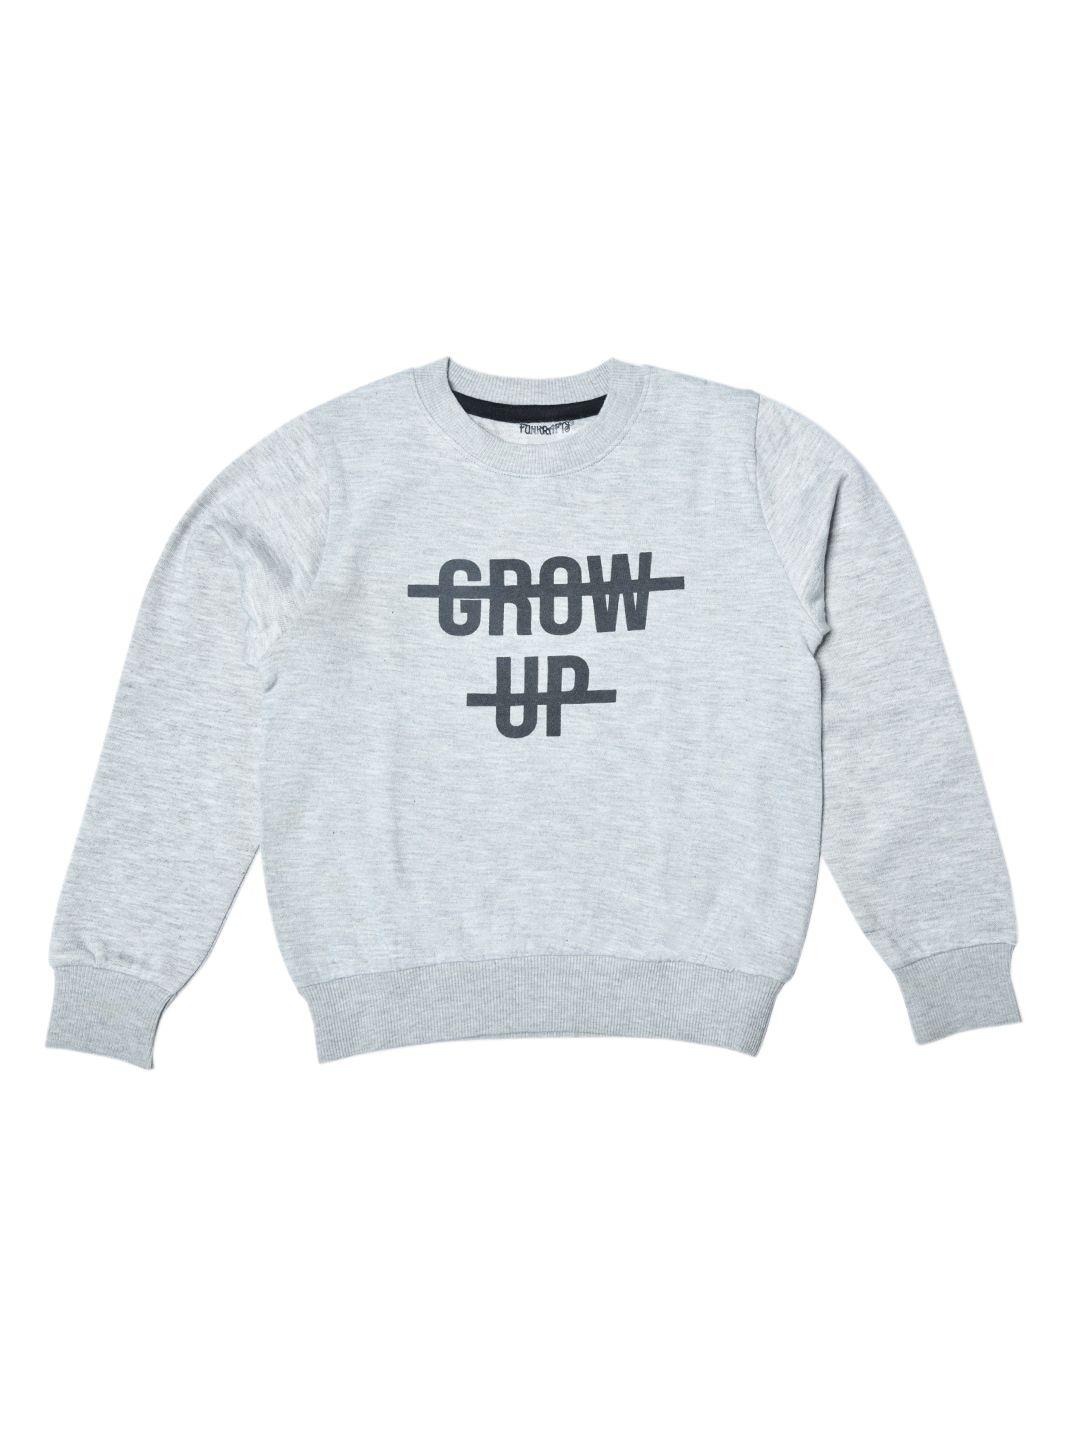 funkrafts unisex kids grey printed sweatshirt